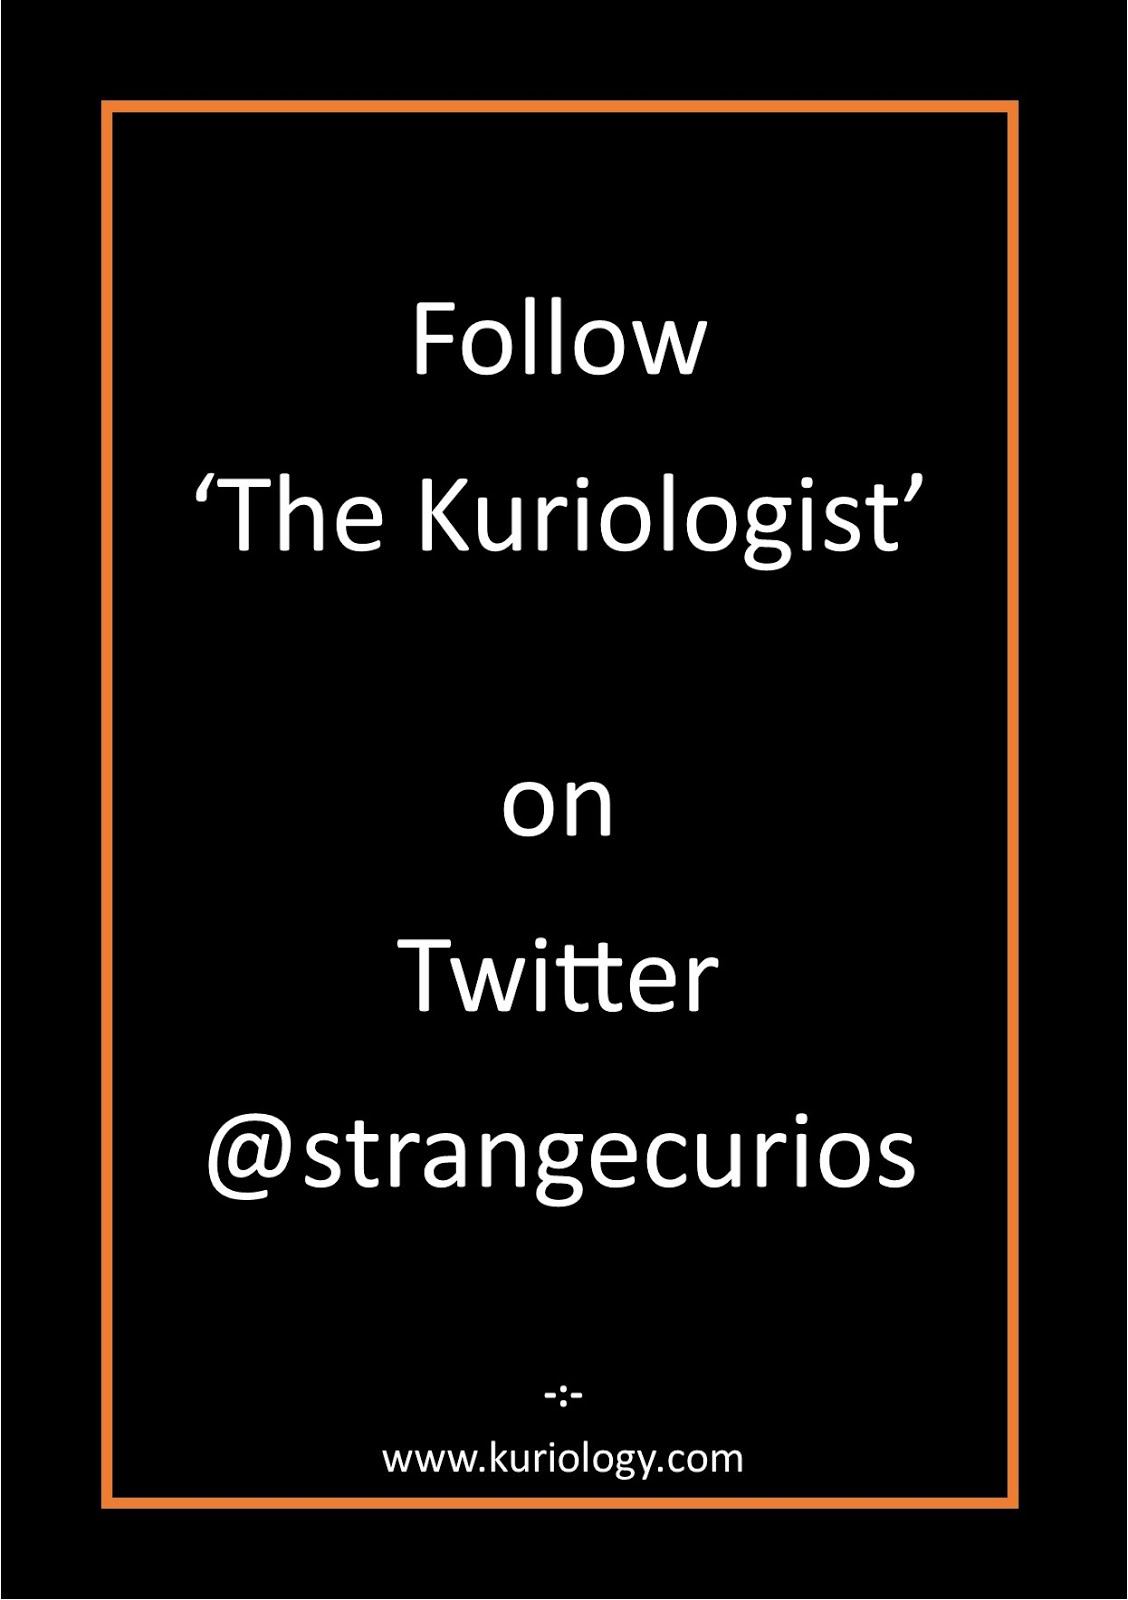 Kuriologist on Twitter